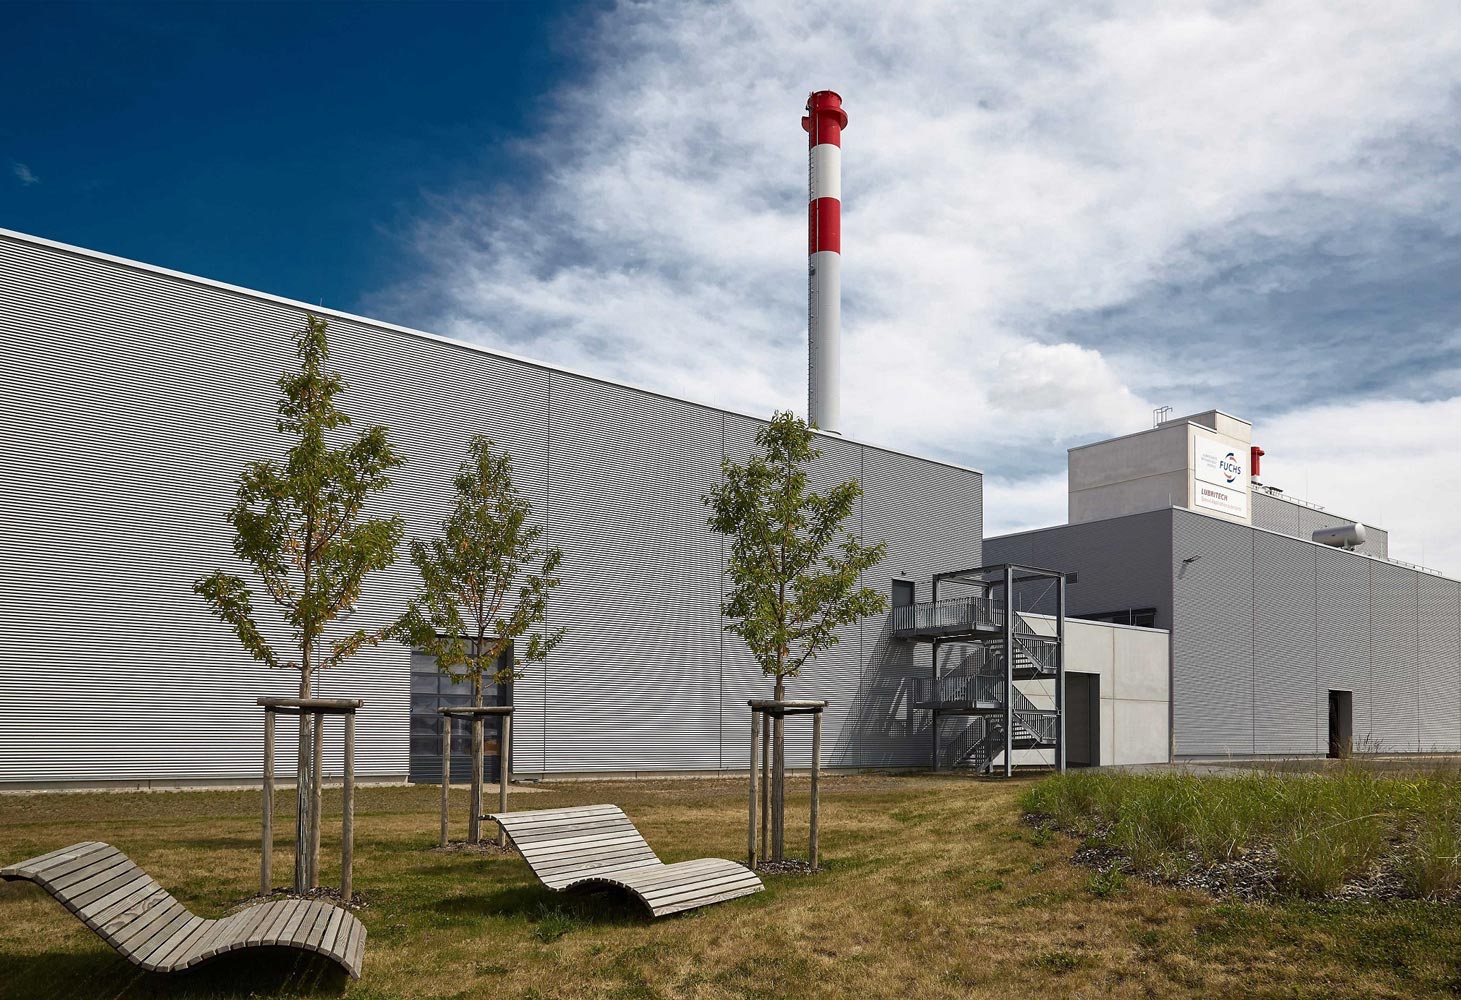 FUCHS opens new polyurea grease plant in Kaiserslautern